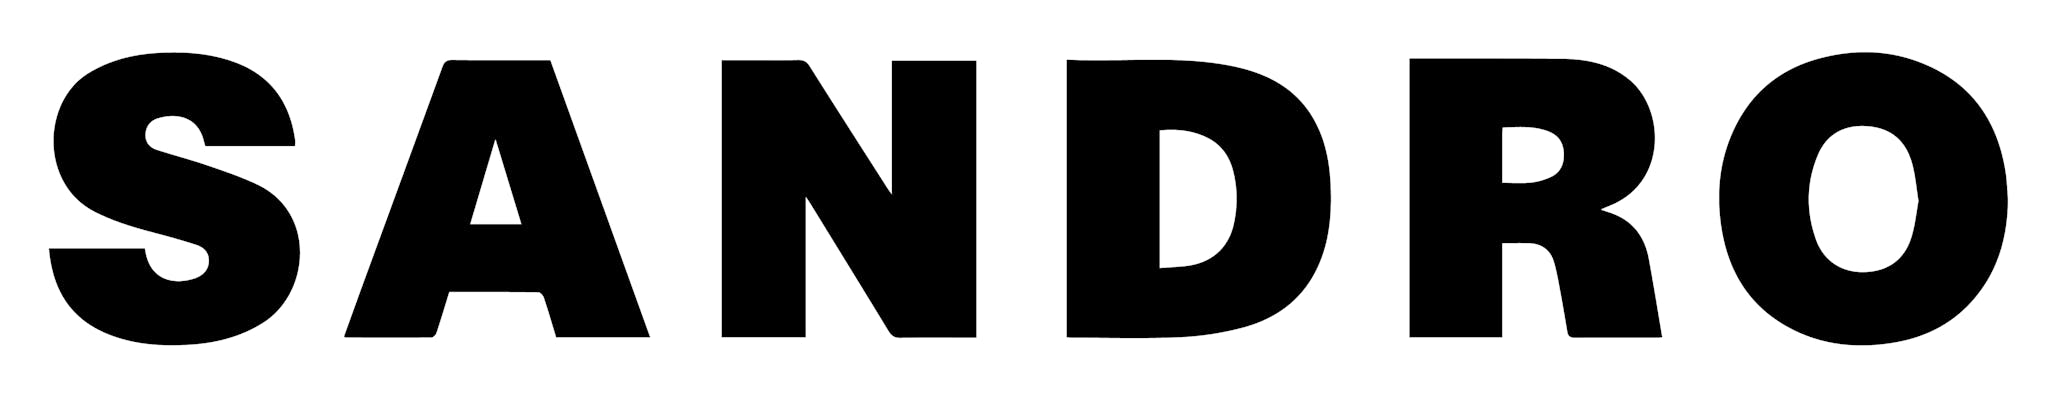 Sandro Brand Logo